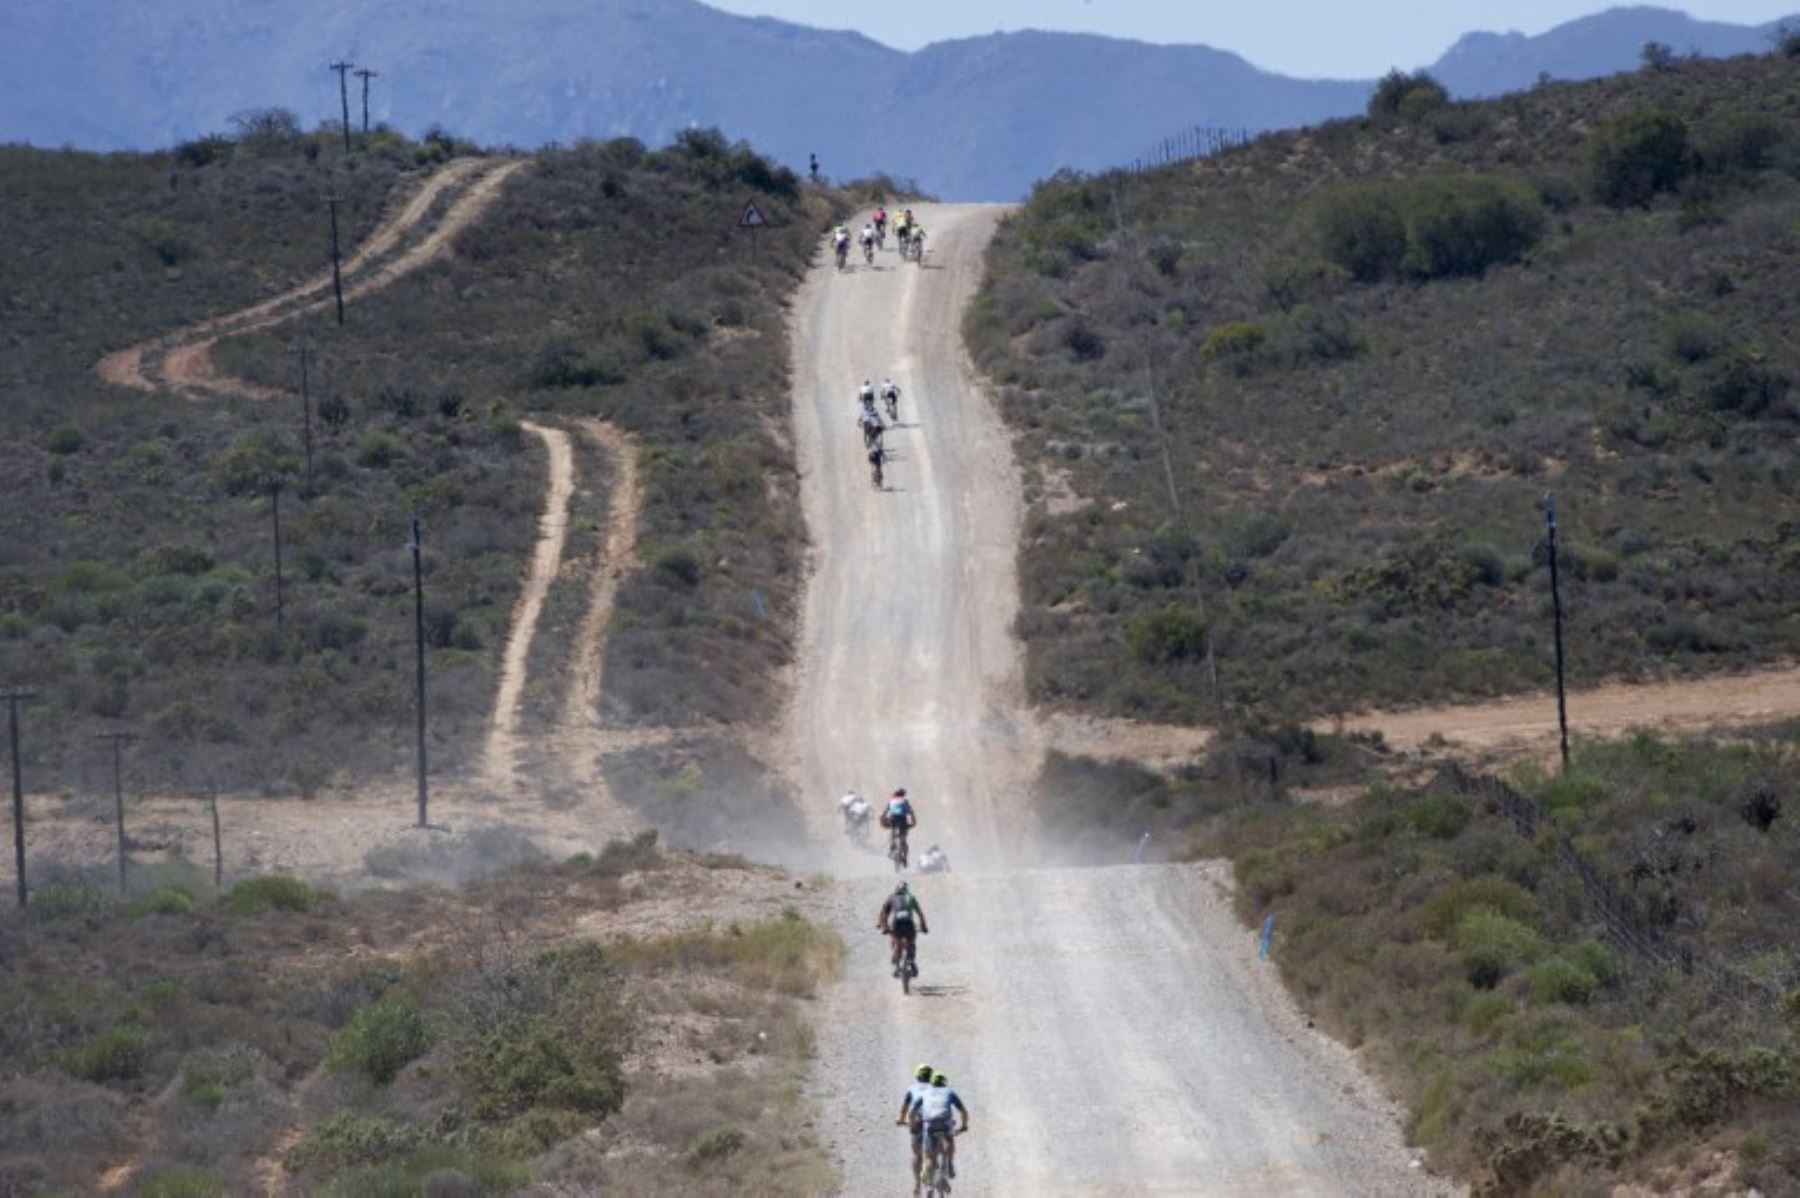 Participantes cabalgán durante la primera etapa de la carrera africana de mountain bike Cape Epic 2018 en la ciudad de Robertson,Sudafrica.Foto:AFP